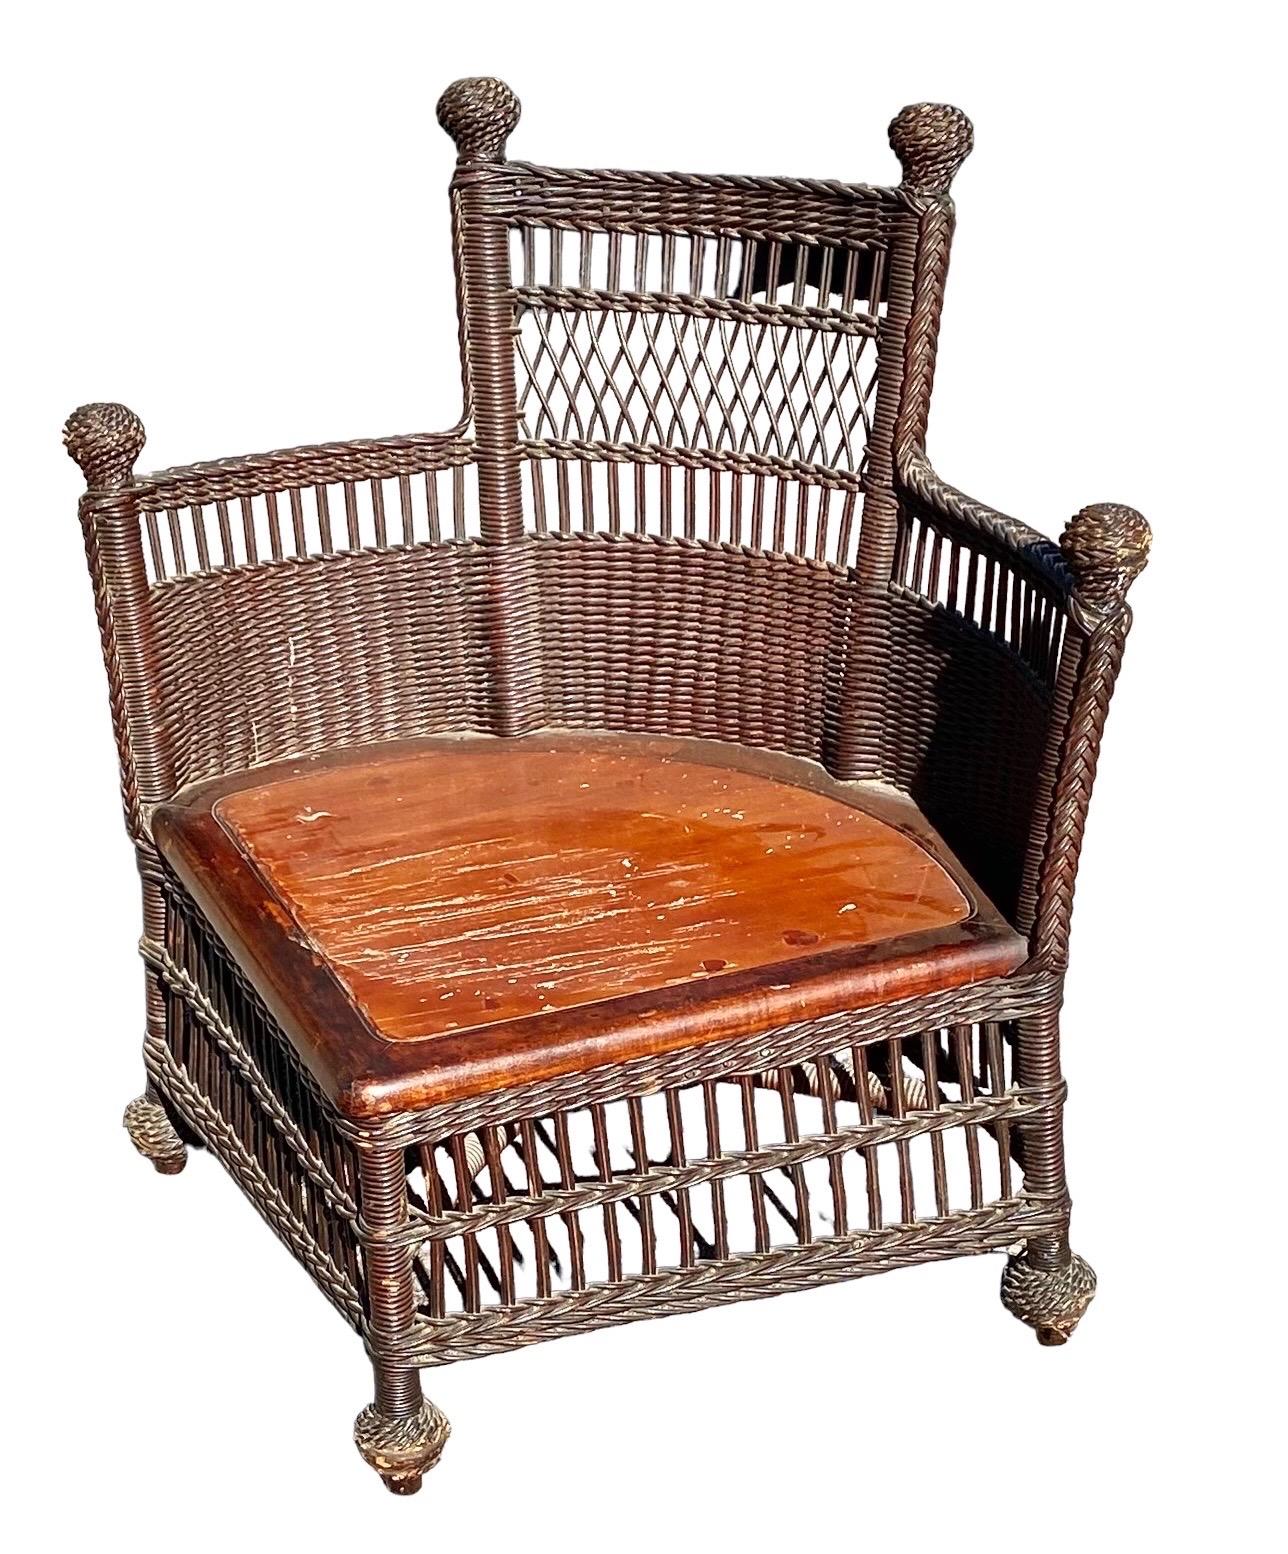 Une charmante chaise d'angle en osier de la fin de l'Amérique victorienne attribuée à Jenkins et Phipps de Wakefield, Mass, ayant la plate-forme de siège en bois d'origine pour un coussin. 

Une pièce pratique à placer dans un coin vide de votre